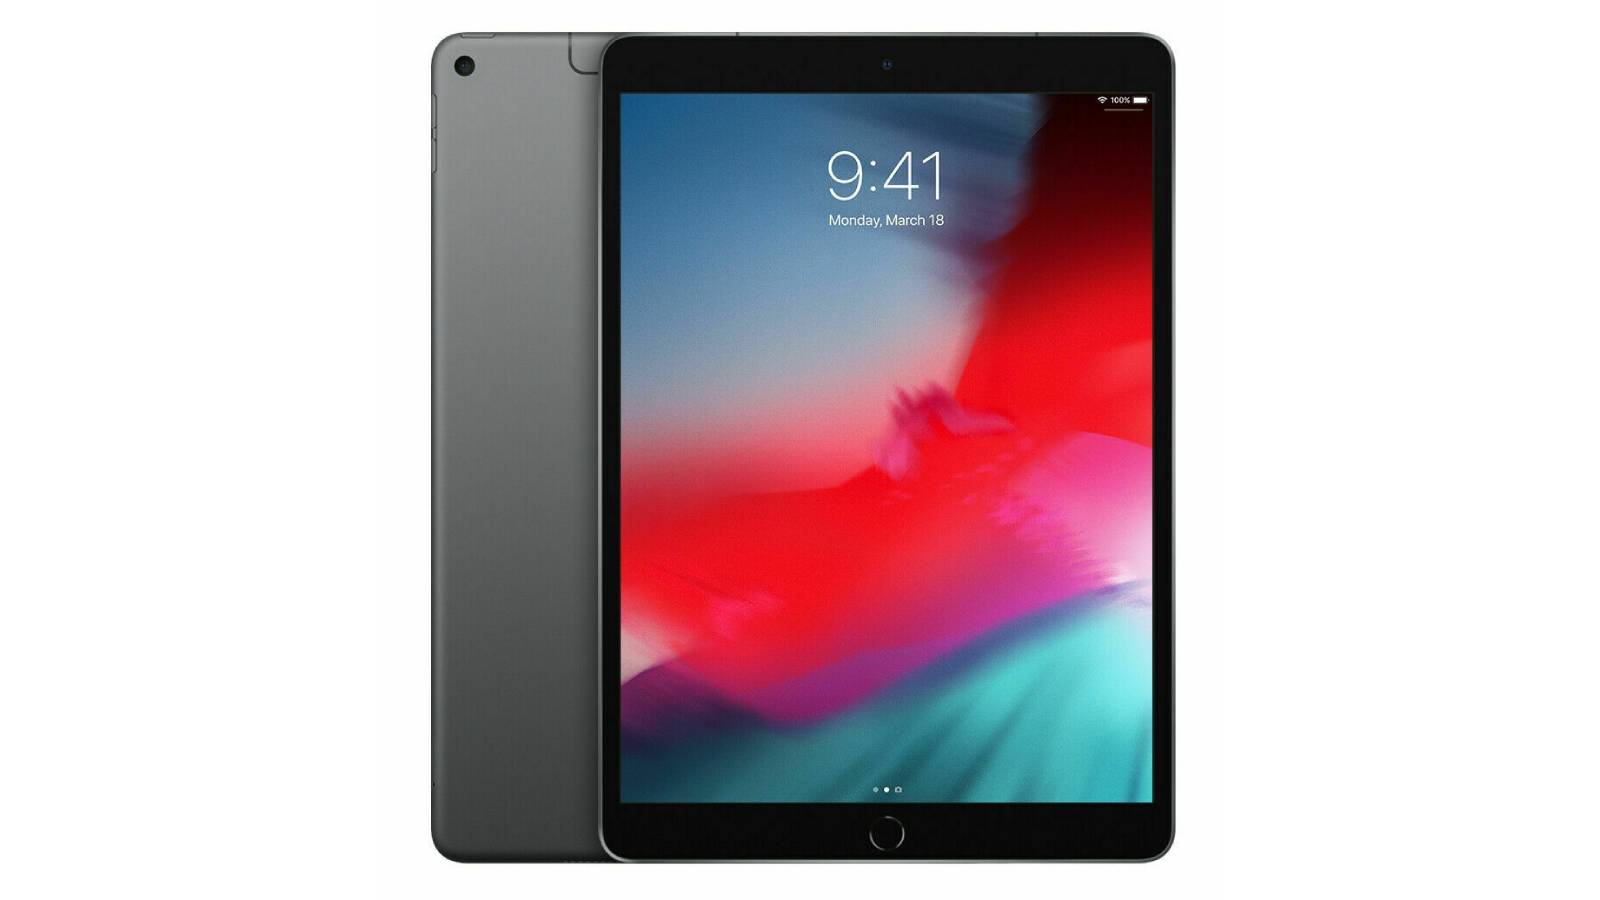 L'iPad Air 2020 voit son prix baisser de 13% sur le site